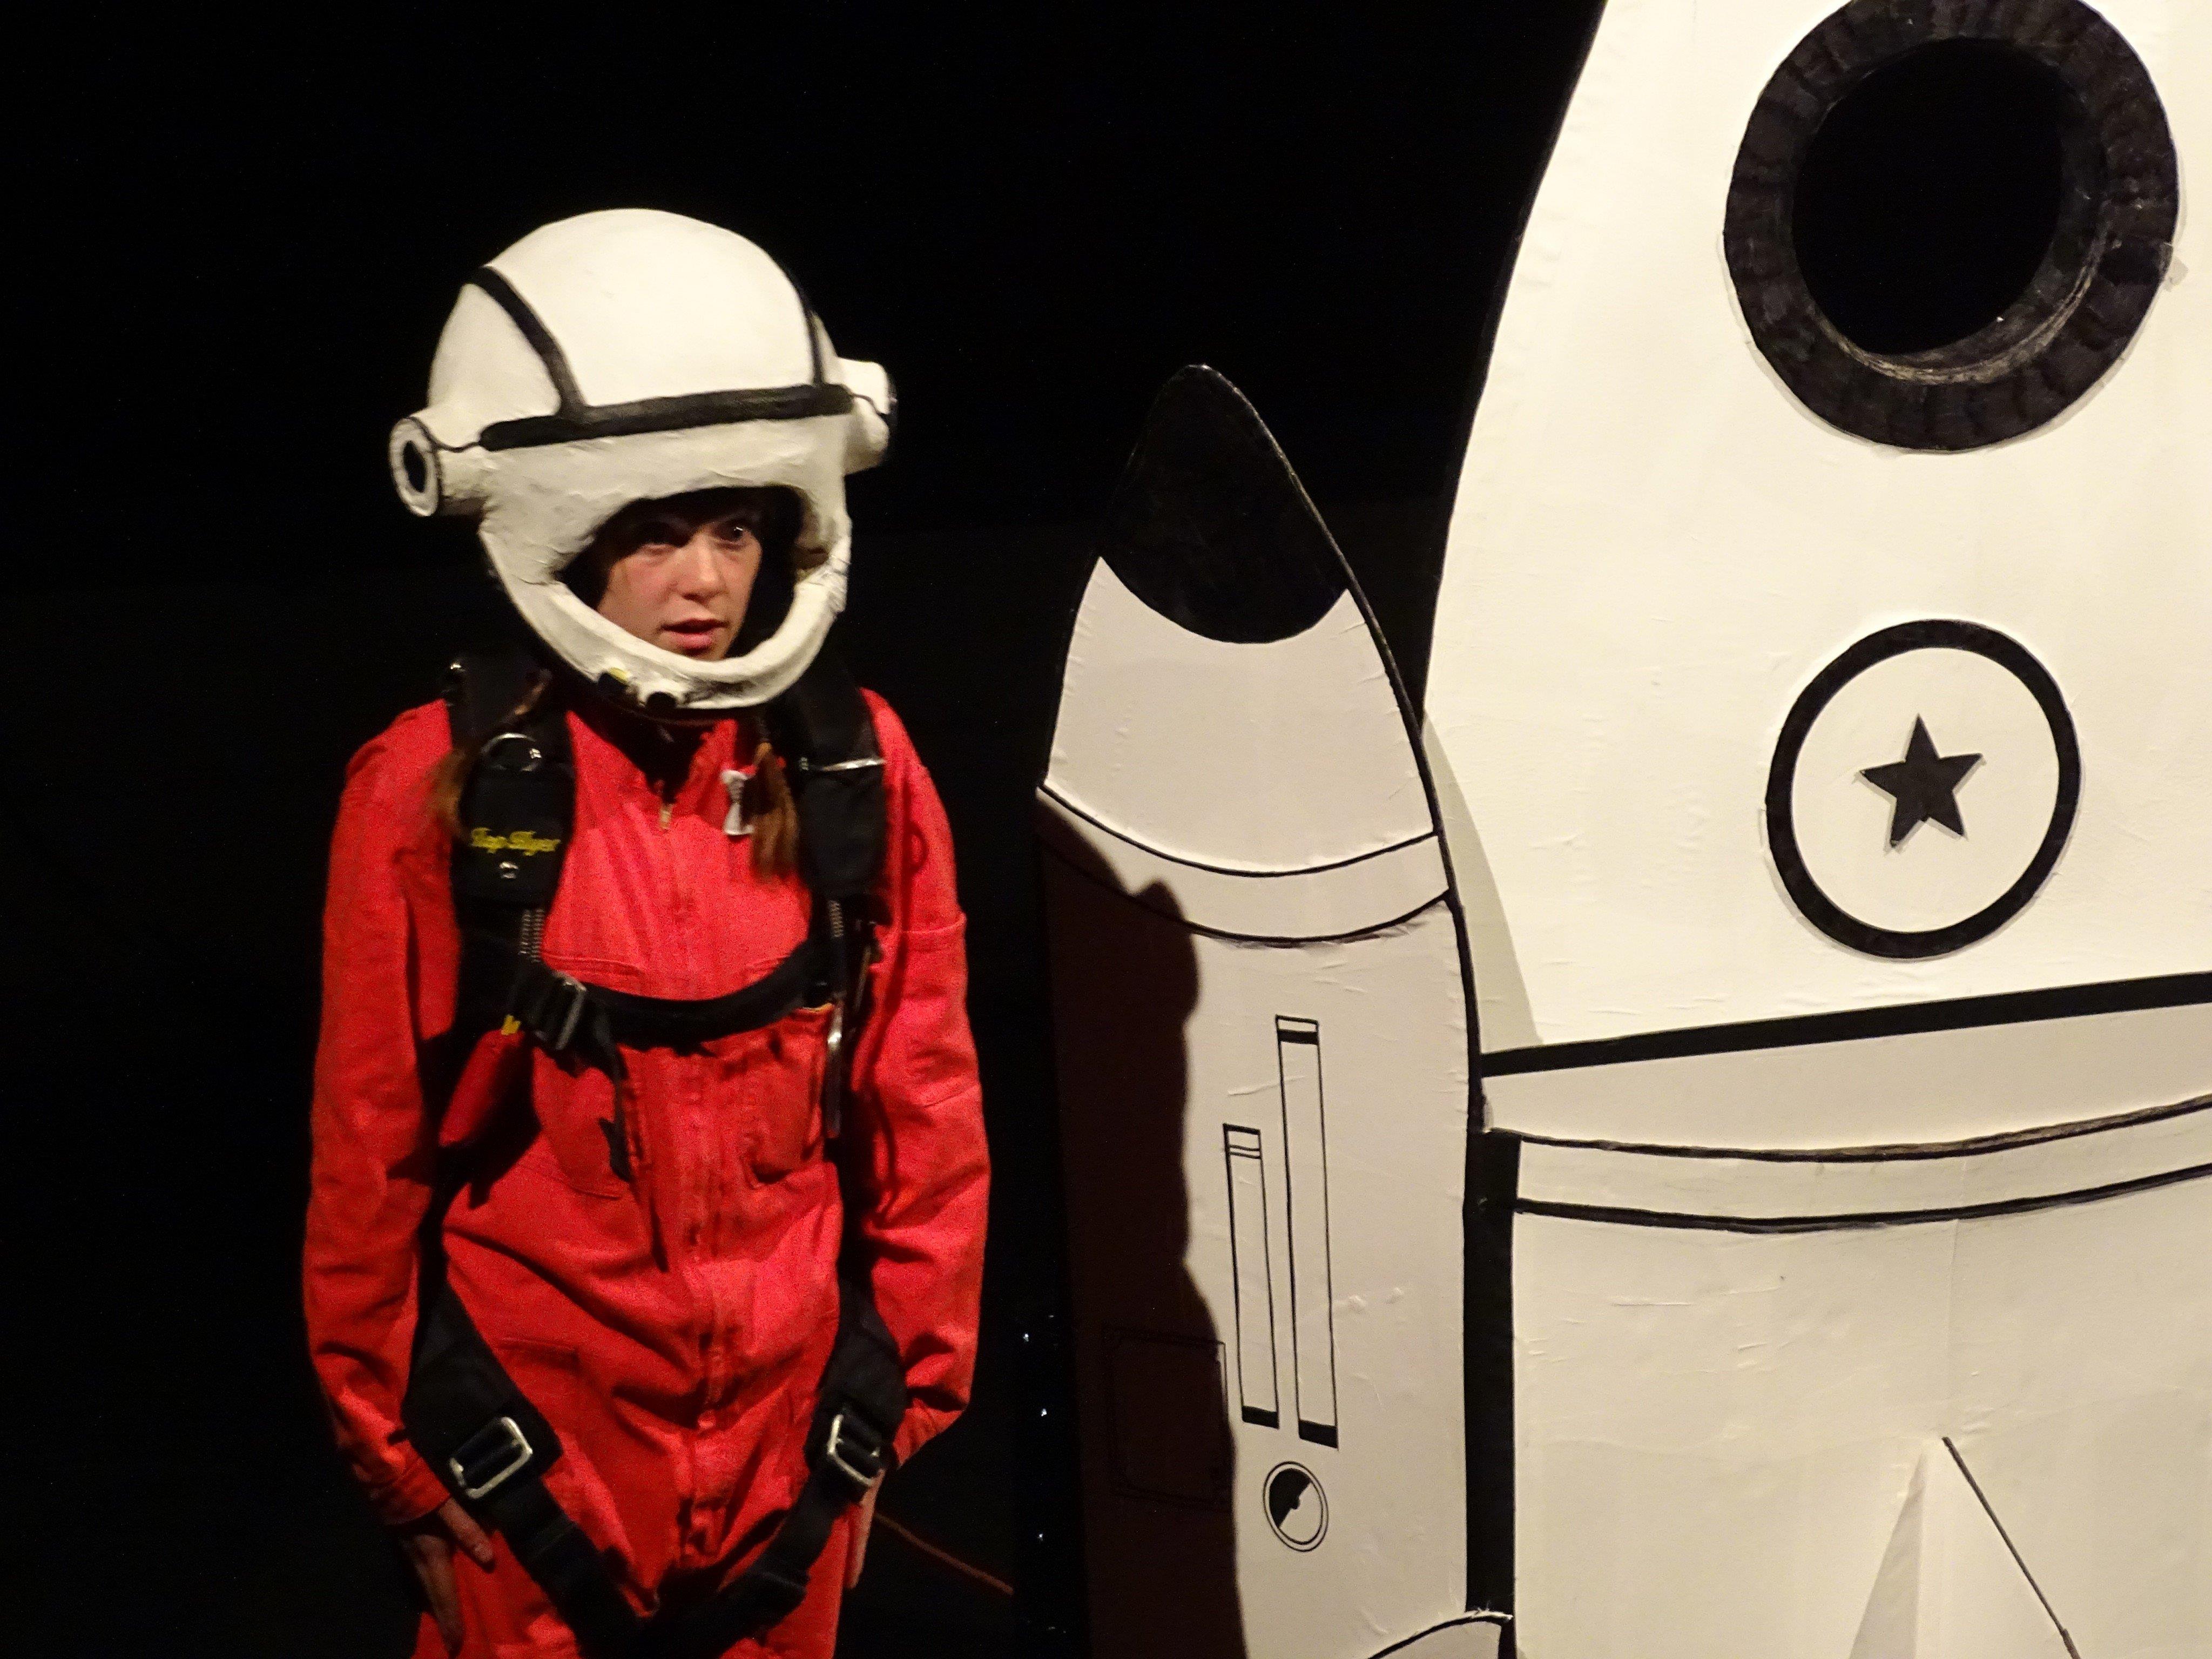 Kosmonautin Walentina nimmt das Publikum mit auf eine Reise durch ihr Leben.